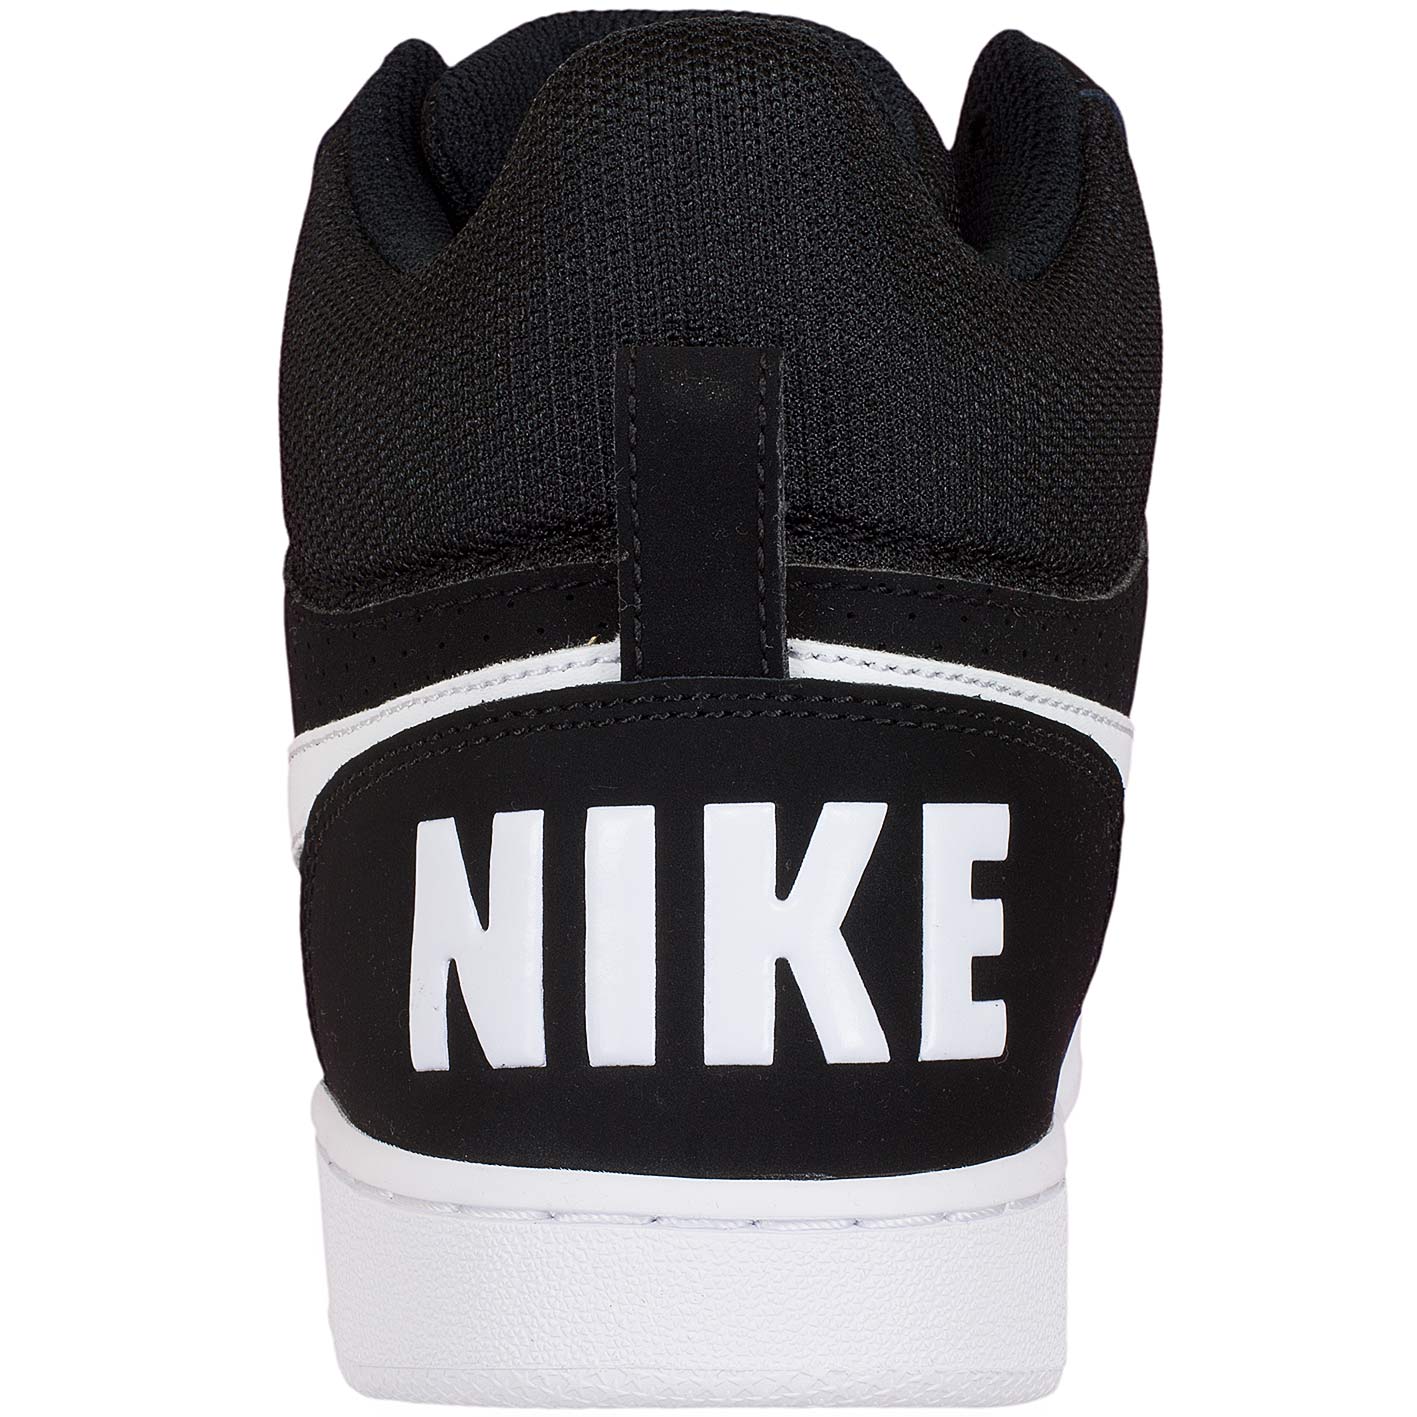 ☆ Nike Damen Sneaker Court Borough Mid schwarz/weiß - hier bestellen!